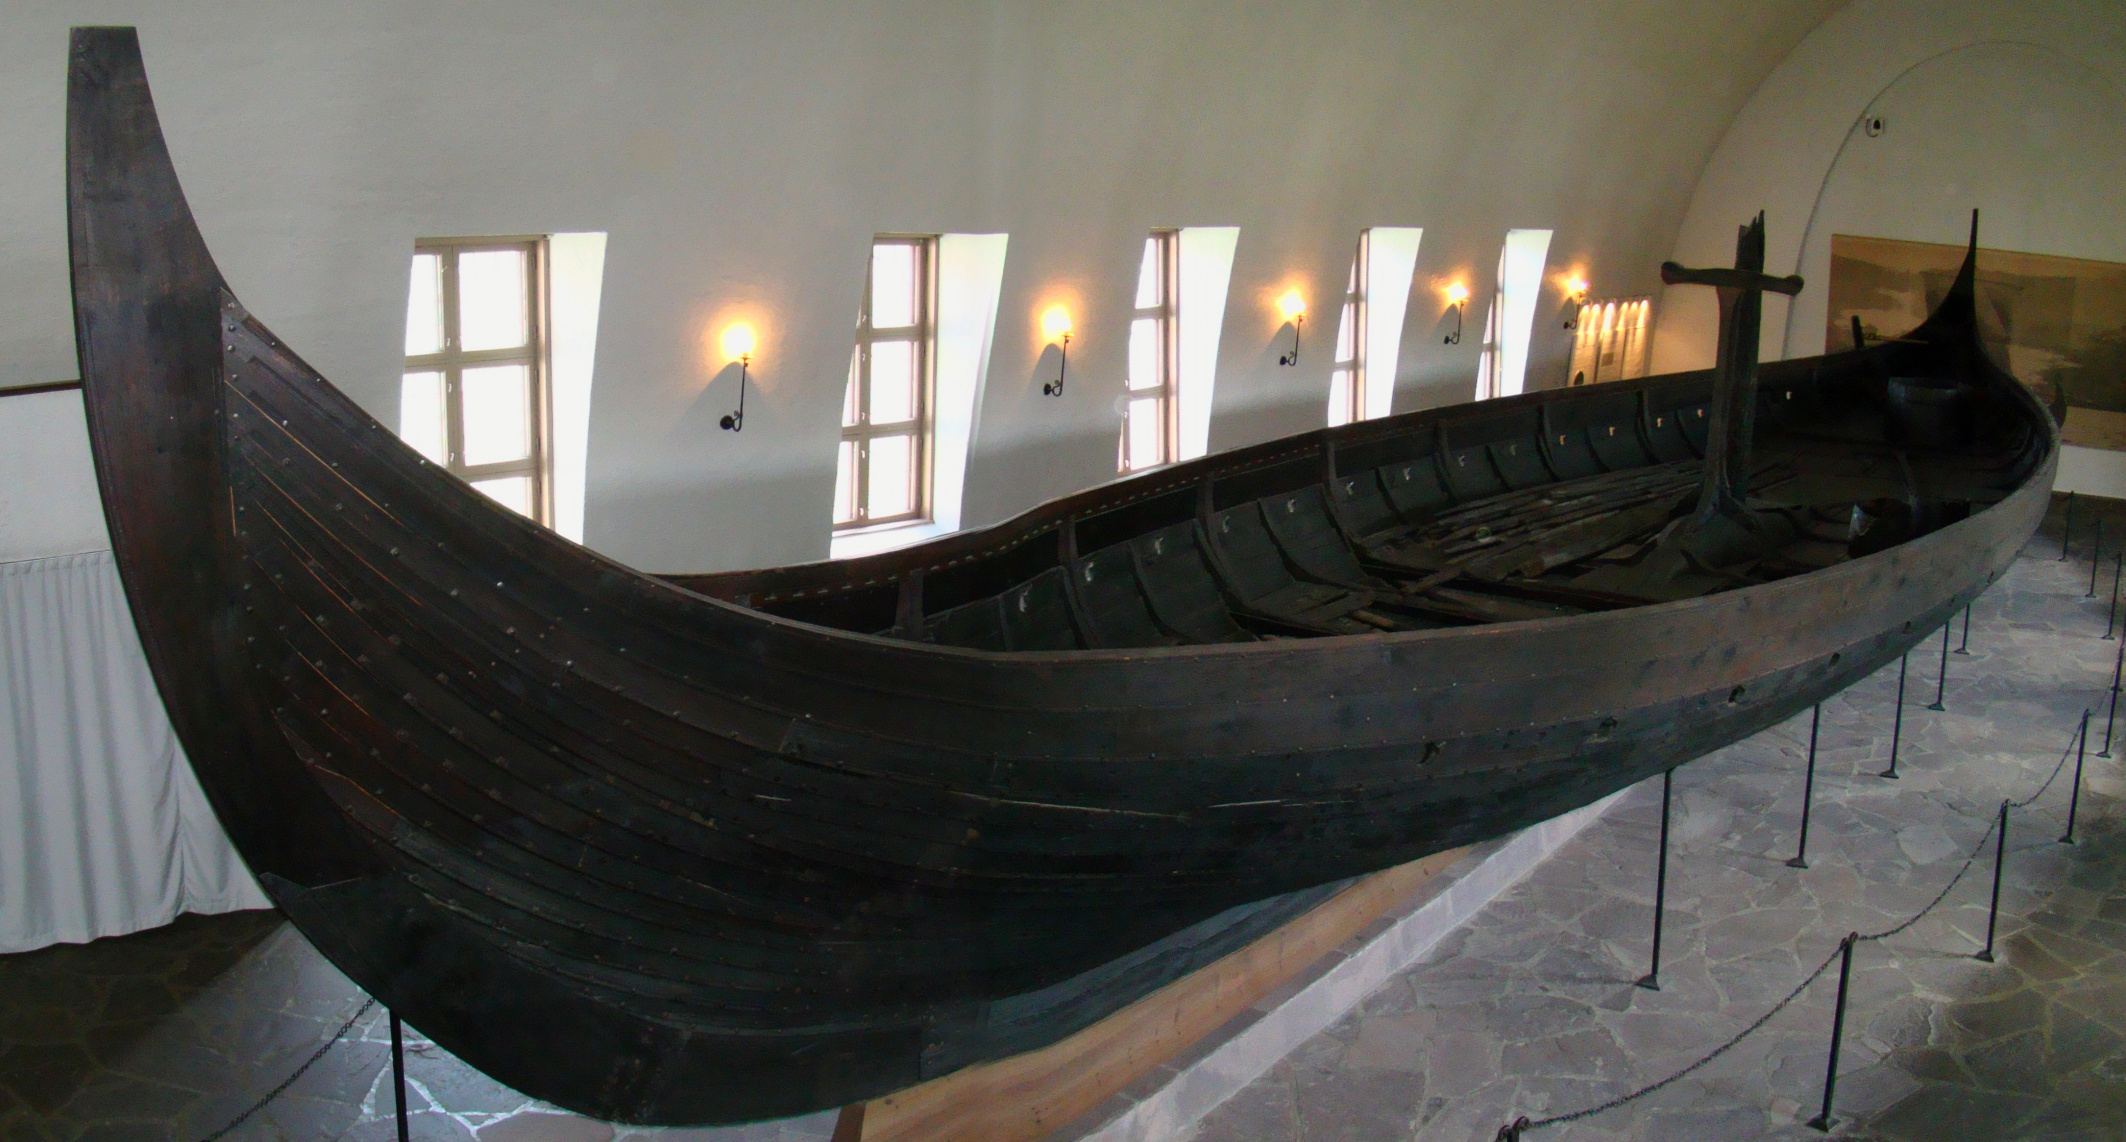 Le navire Gokstad dans le musée des navires vikings construit à cet effet à Oslo, en Norvège. Le navire mesure 24 mètres de long et 5 mètres de large et peut accueillir 32 hommes avec des rames pour ramer.